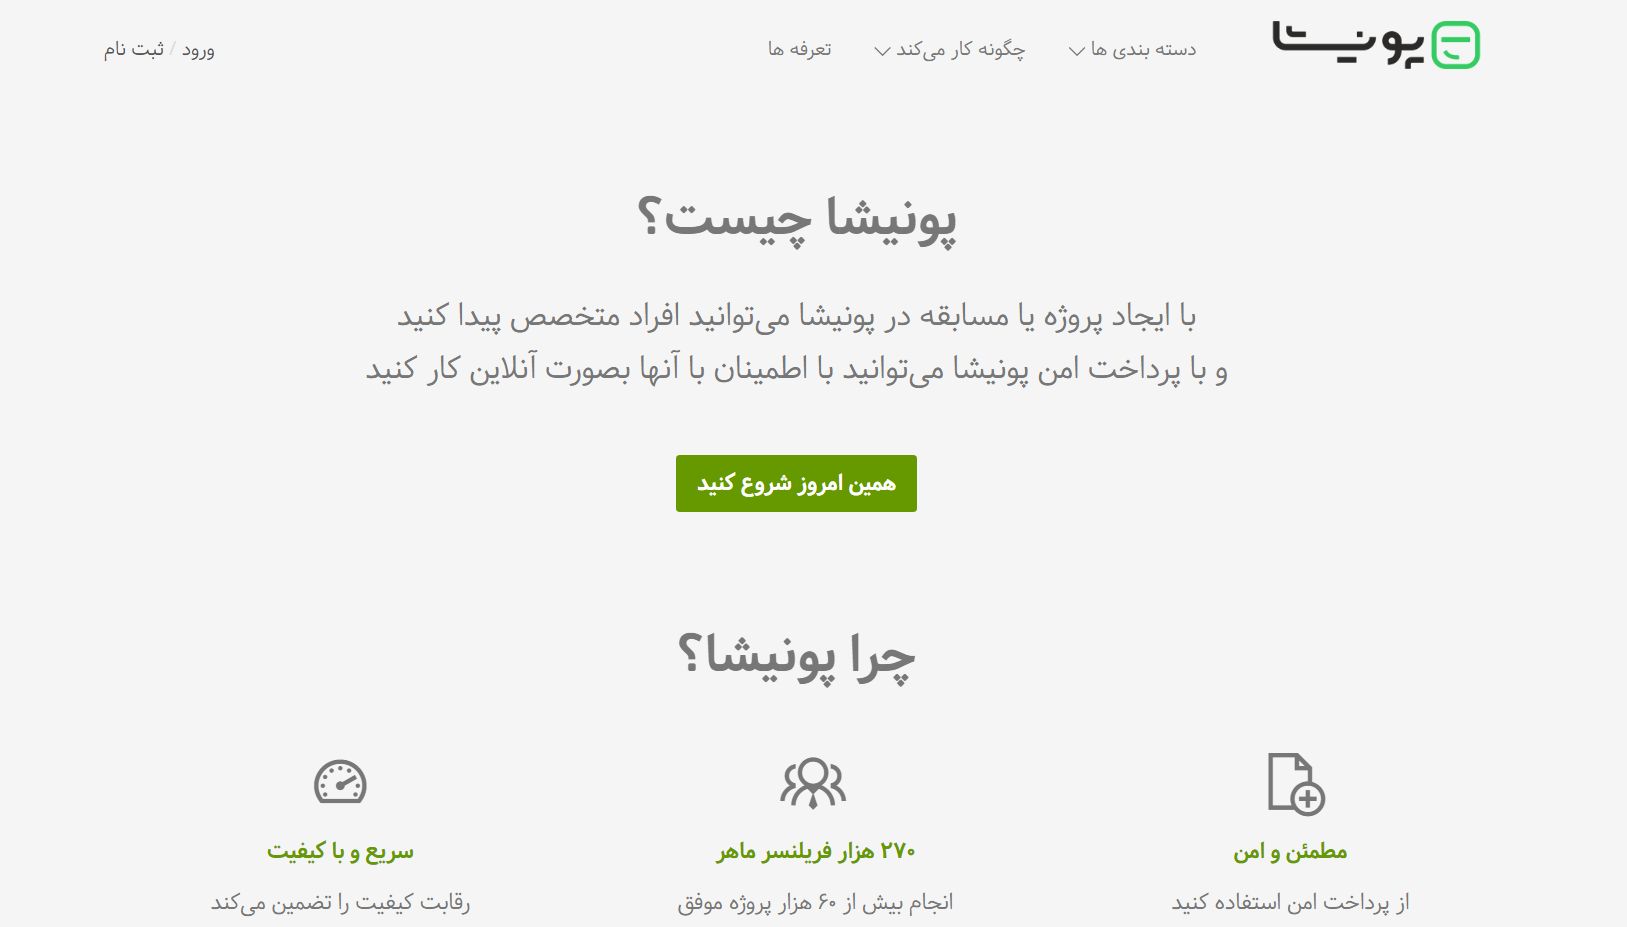 بهترین سایت های فریلنسری یا دورکاری در ایران کدامند؟